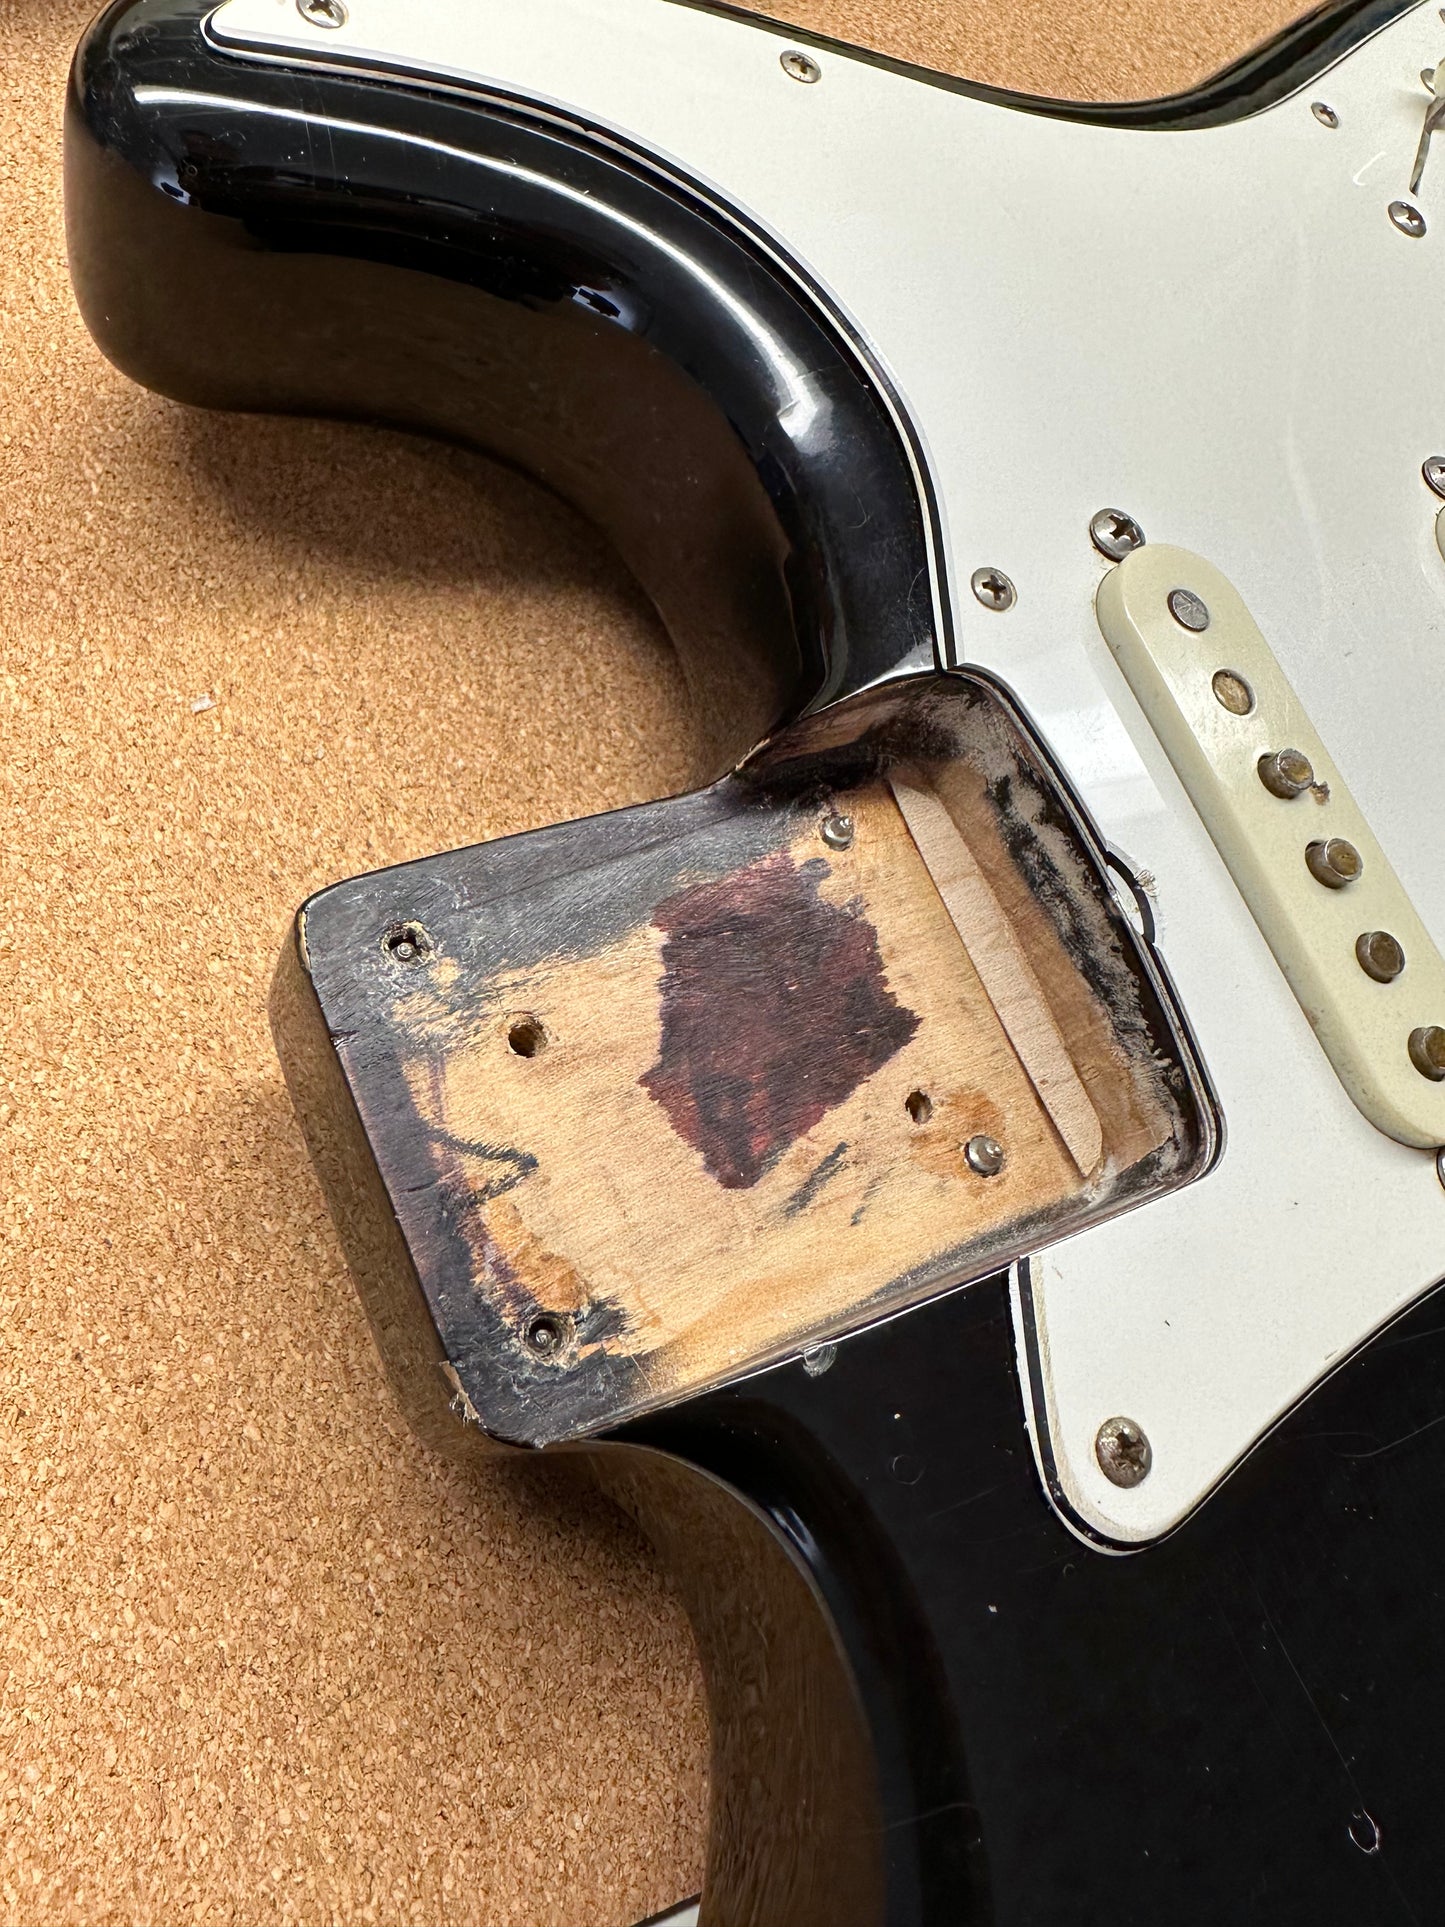 1982 Fender AVRI '62 Black Stratocaster - Fullerton